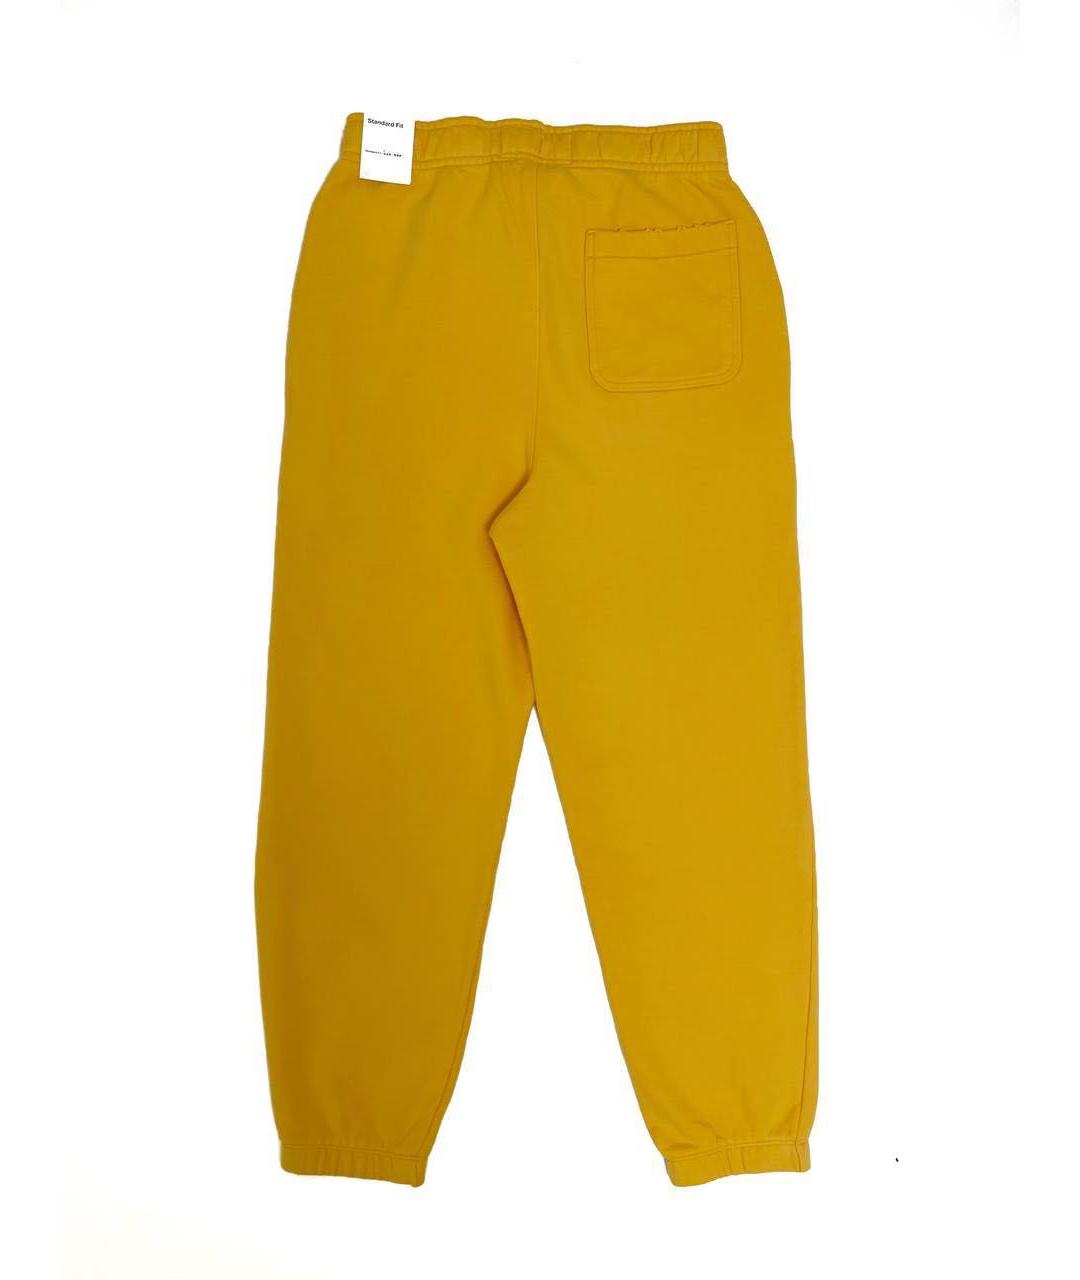 Union LA Желтые хлопковые повседневные брюки, фото 2